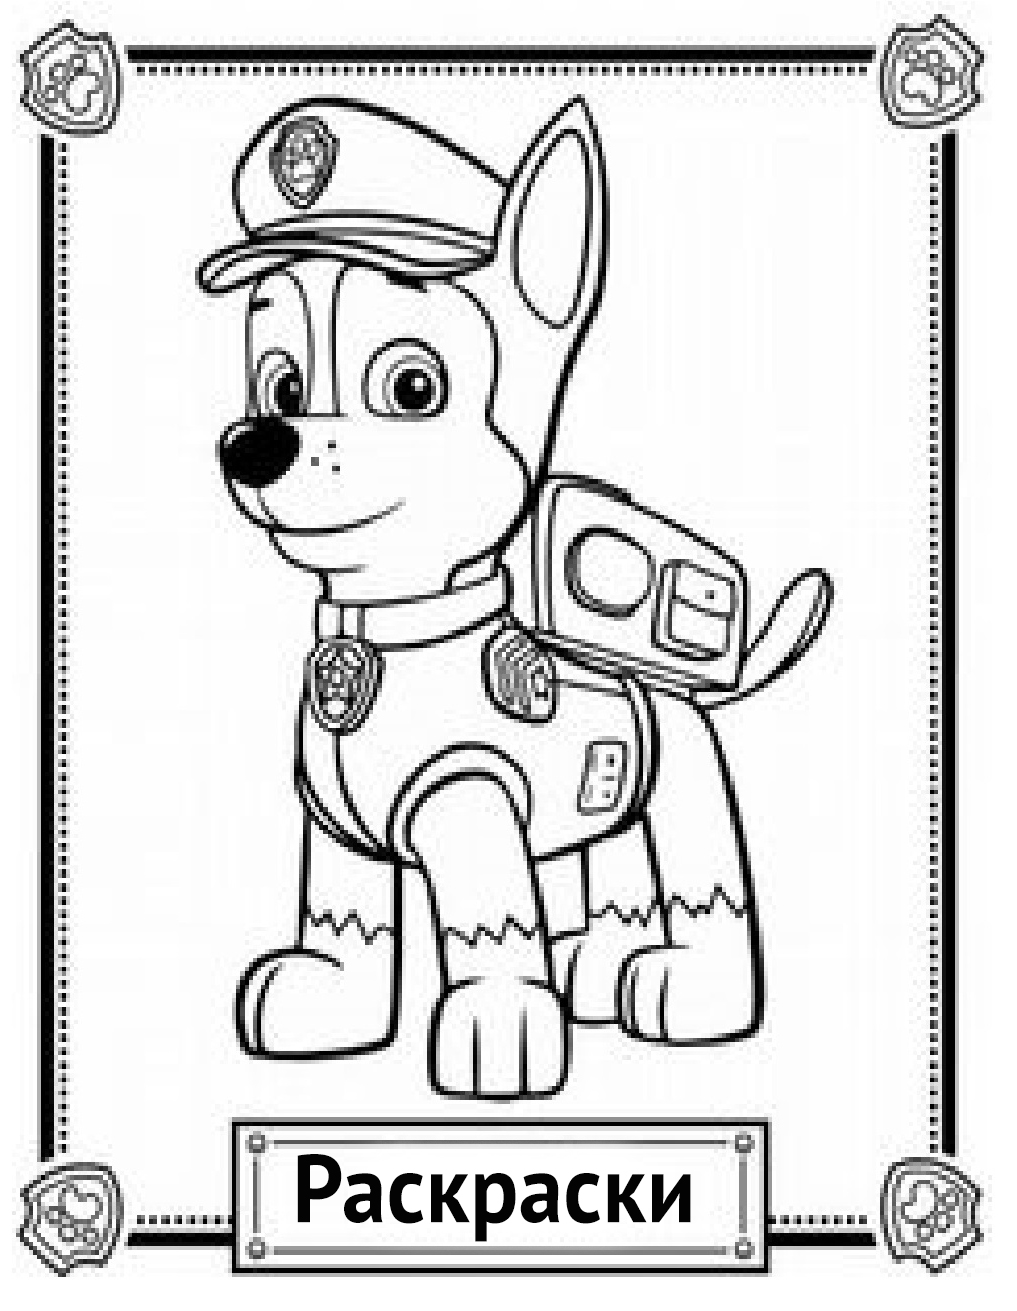 Фото к теме статьи: Раскраски щенячий патруль распечатать бесплатно формат а4 онлайн